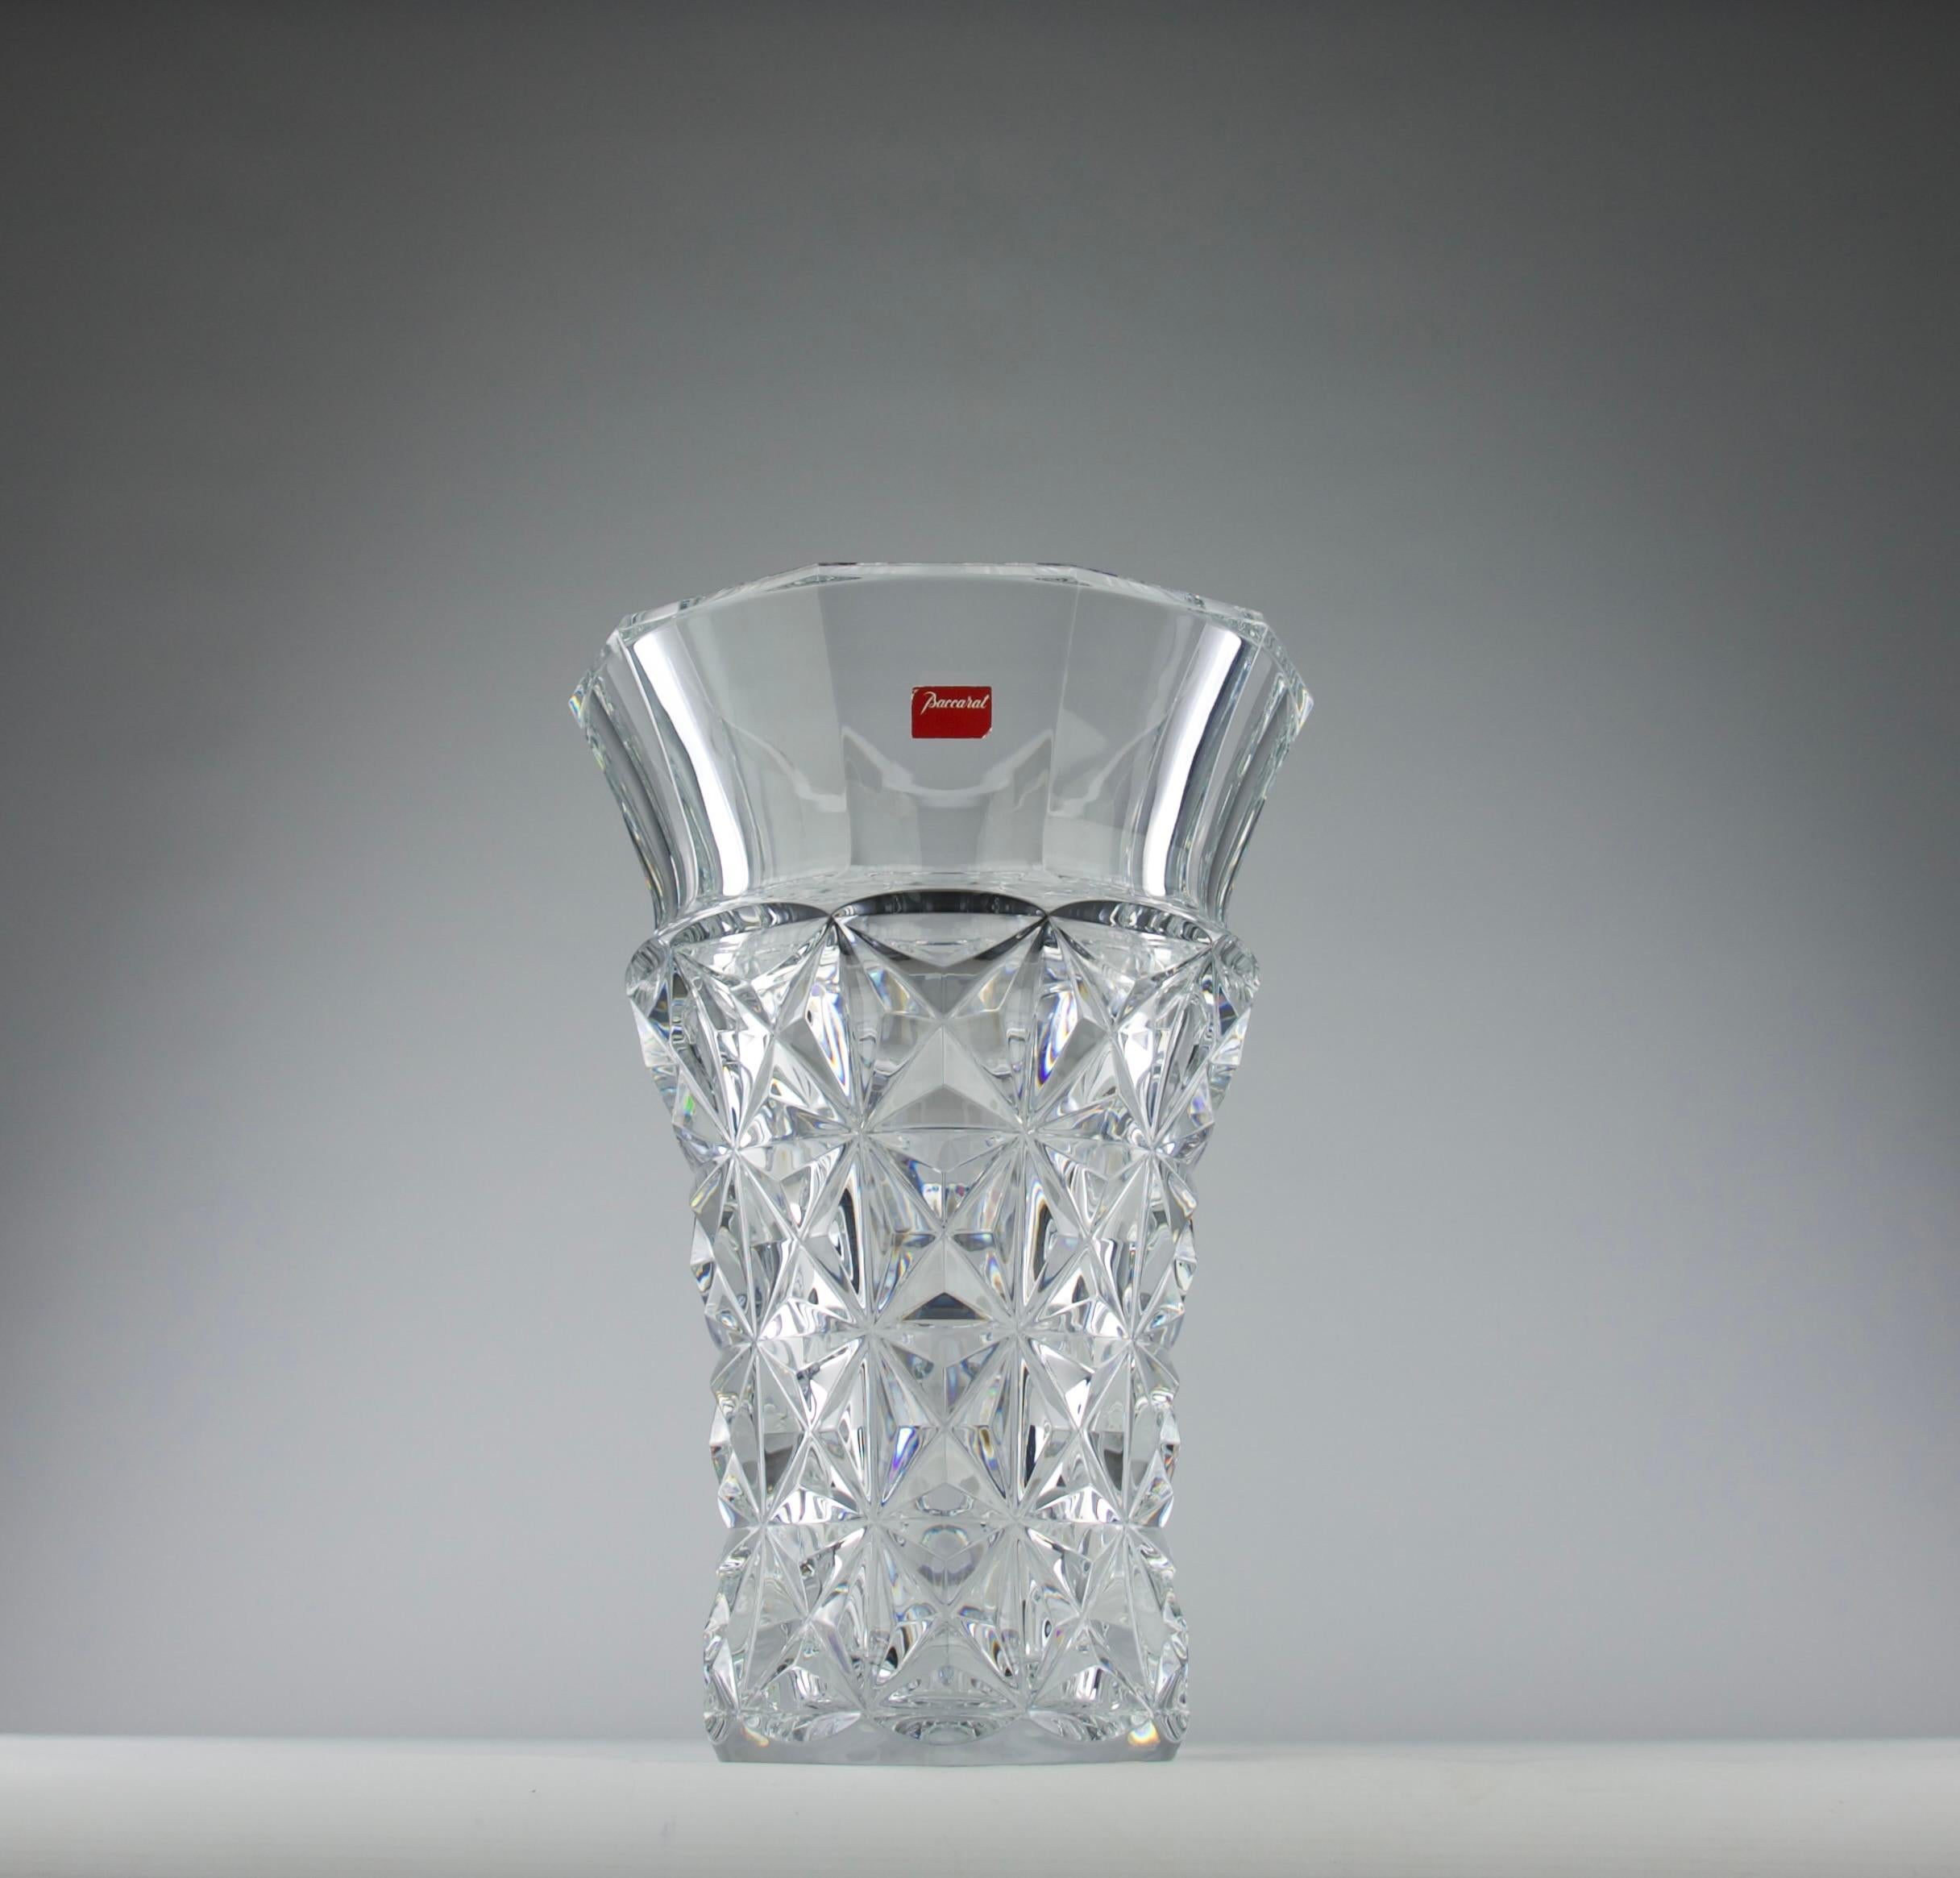 Superbe vase en cristal de Célimène, réalisé par la célèbre manufacture Baccarat. Cette superbe pièce met en valeur le savoir-faire légendaire de Baccarat, alliant tradition et sophistication contemporaine.

Design/One : Le vase Silhouette présente